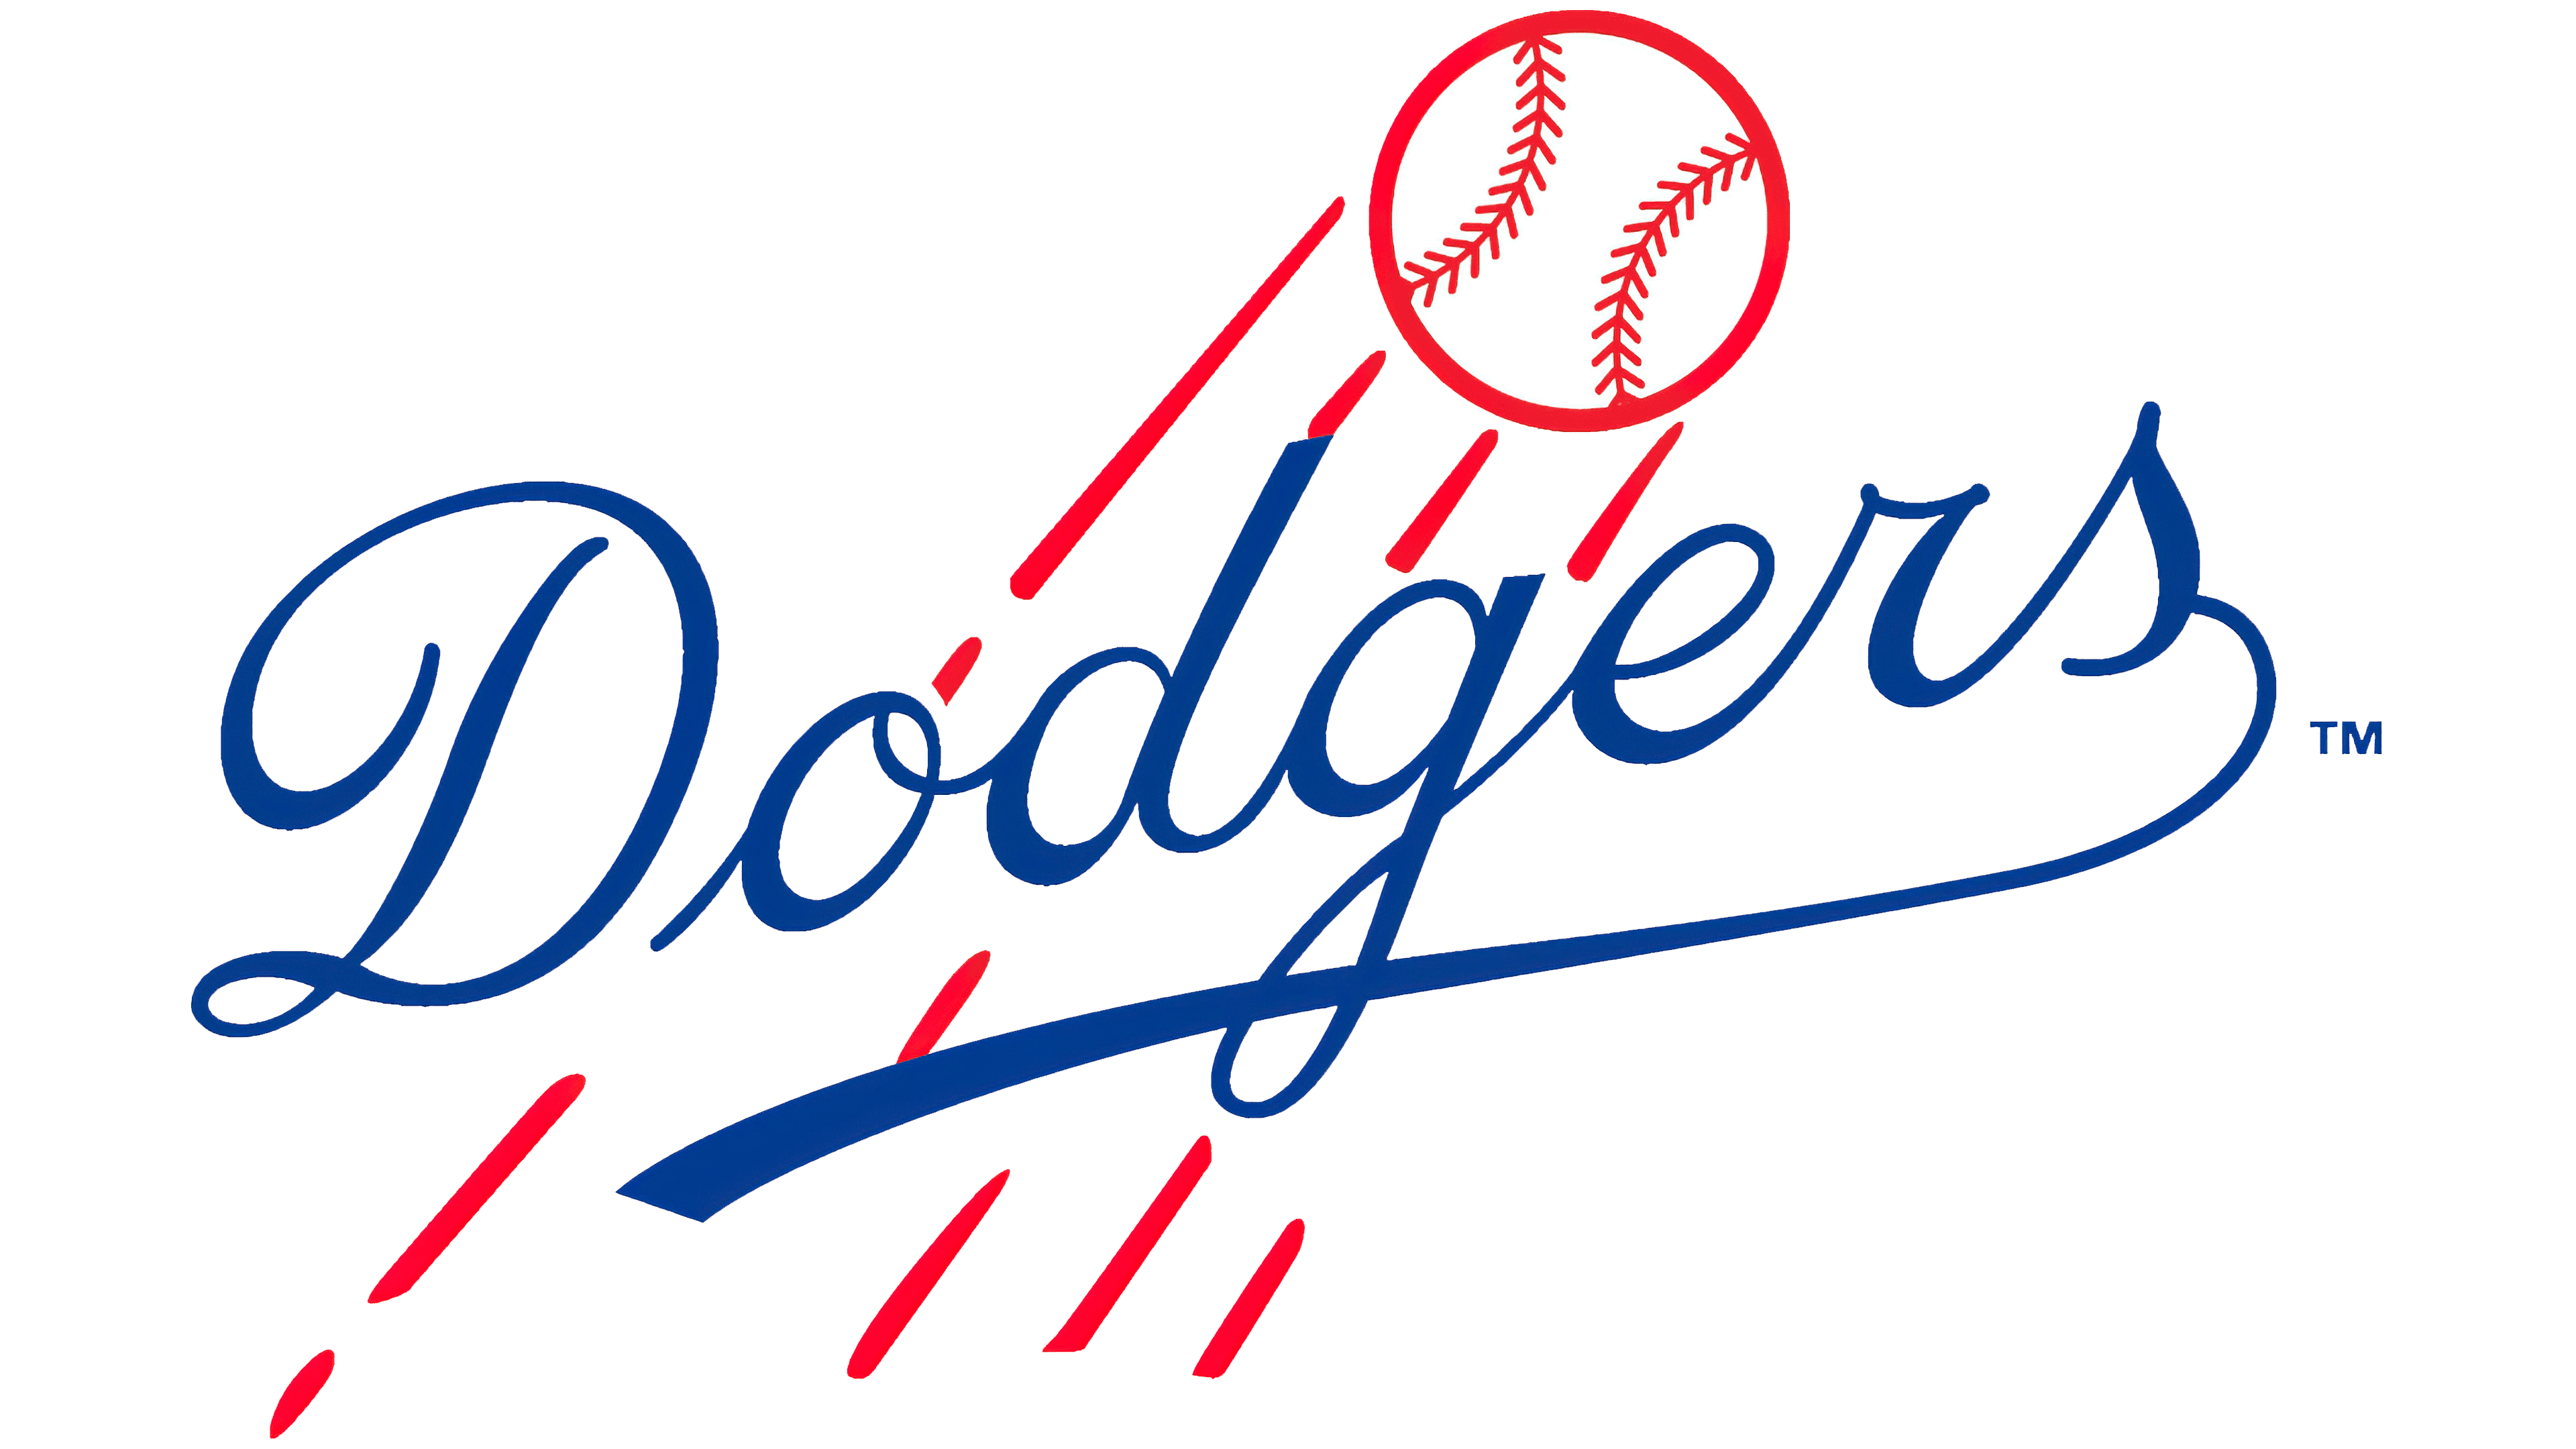 LA Dodgers Logo PNG